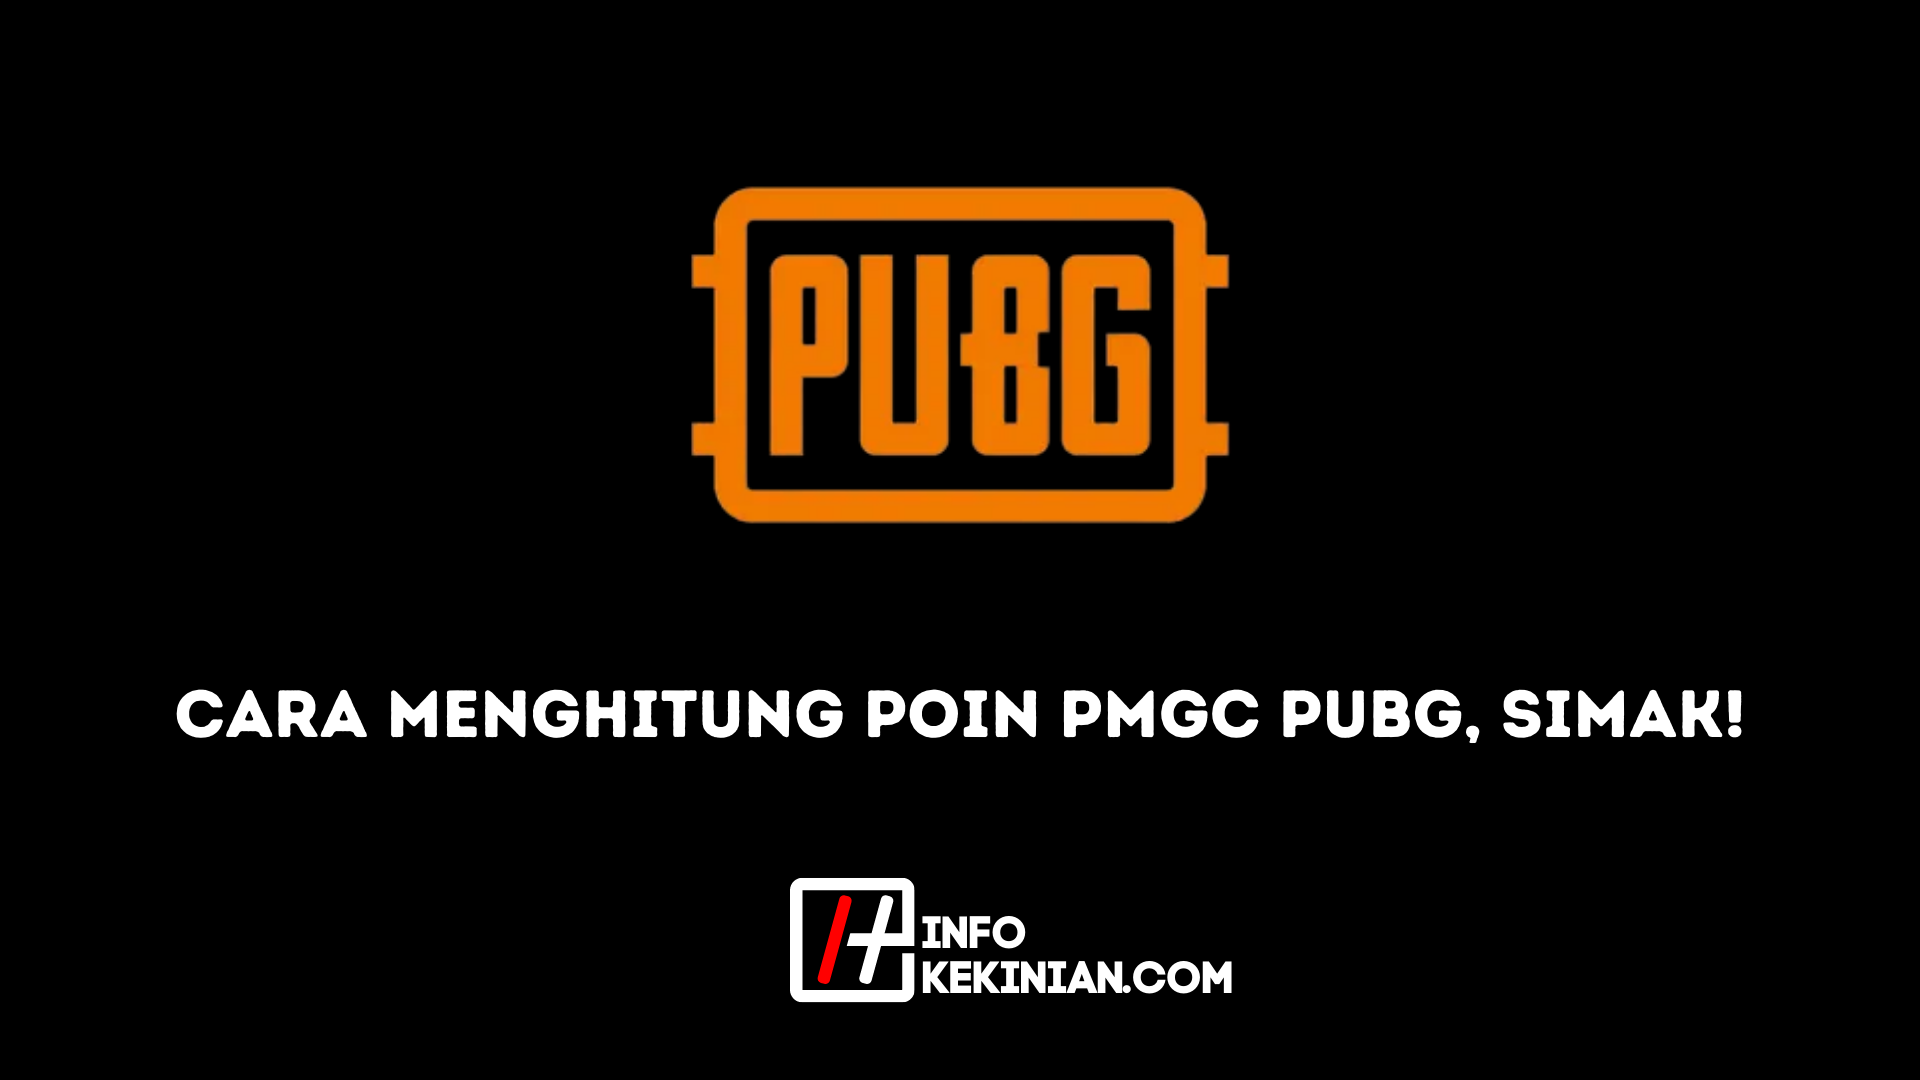 Jak obliczyć punkty PUBG PMGC Zobacz